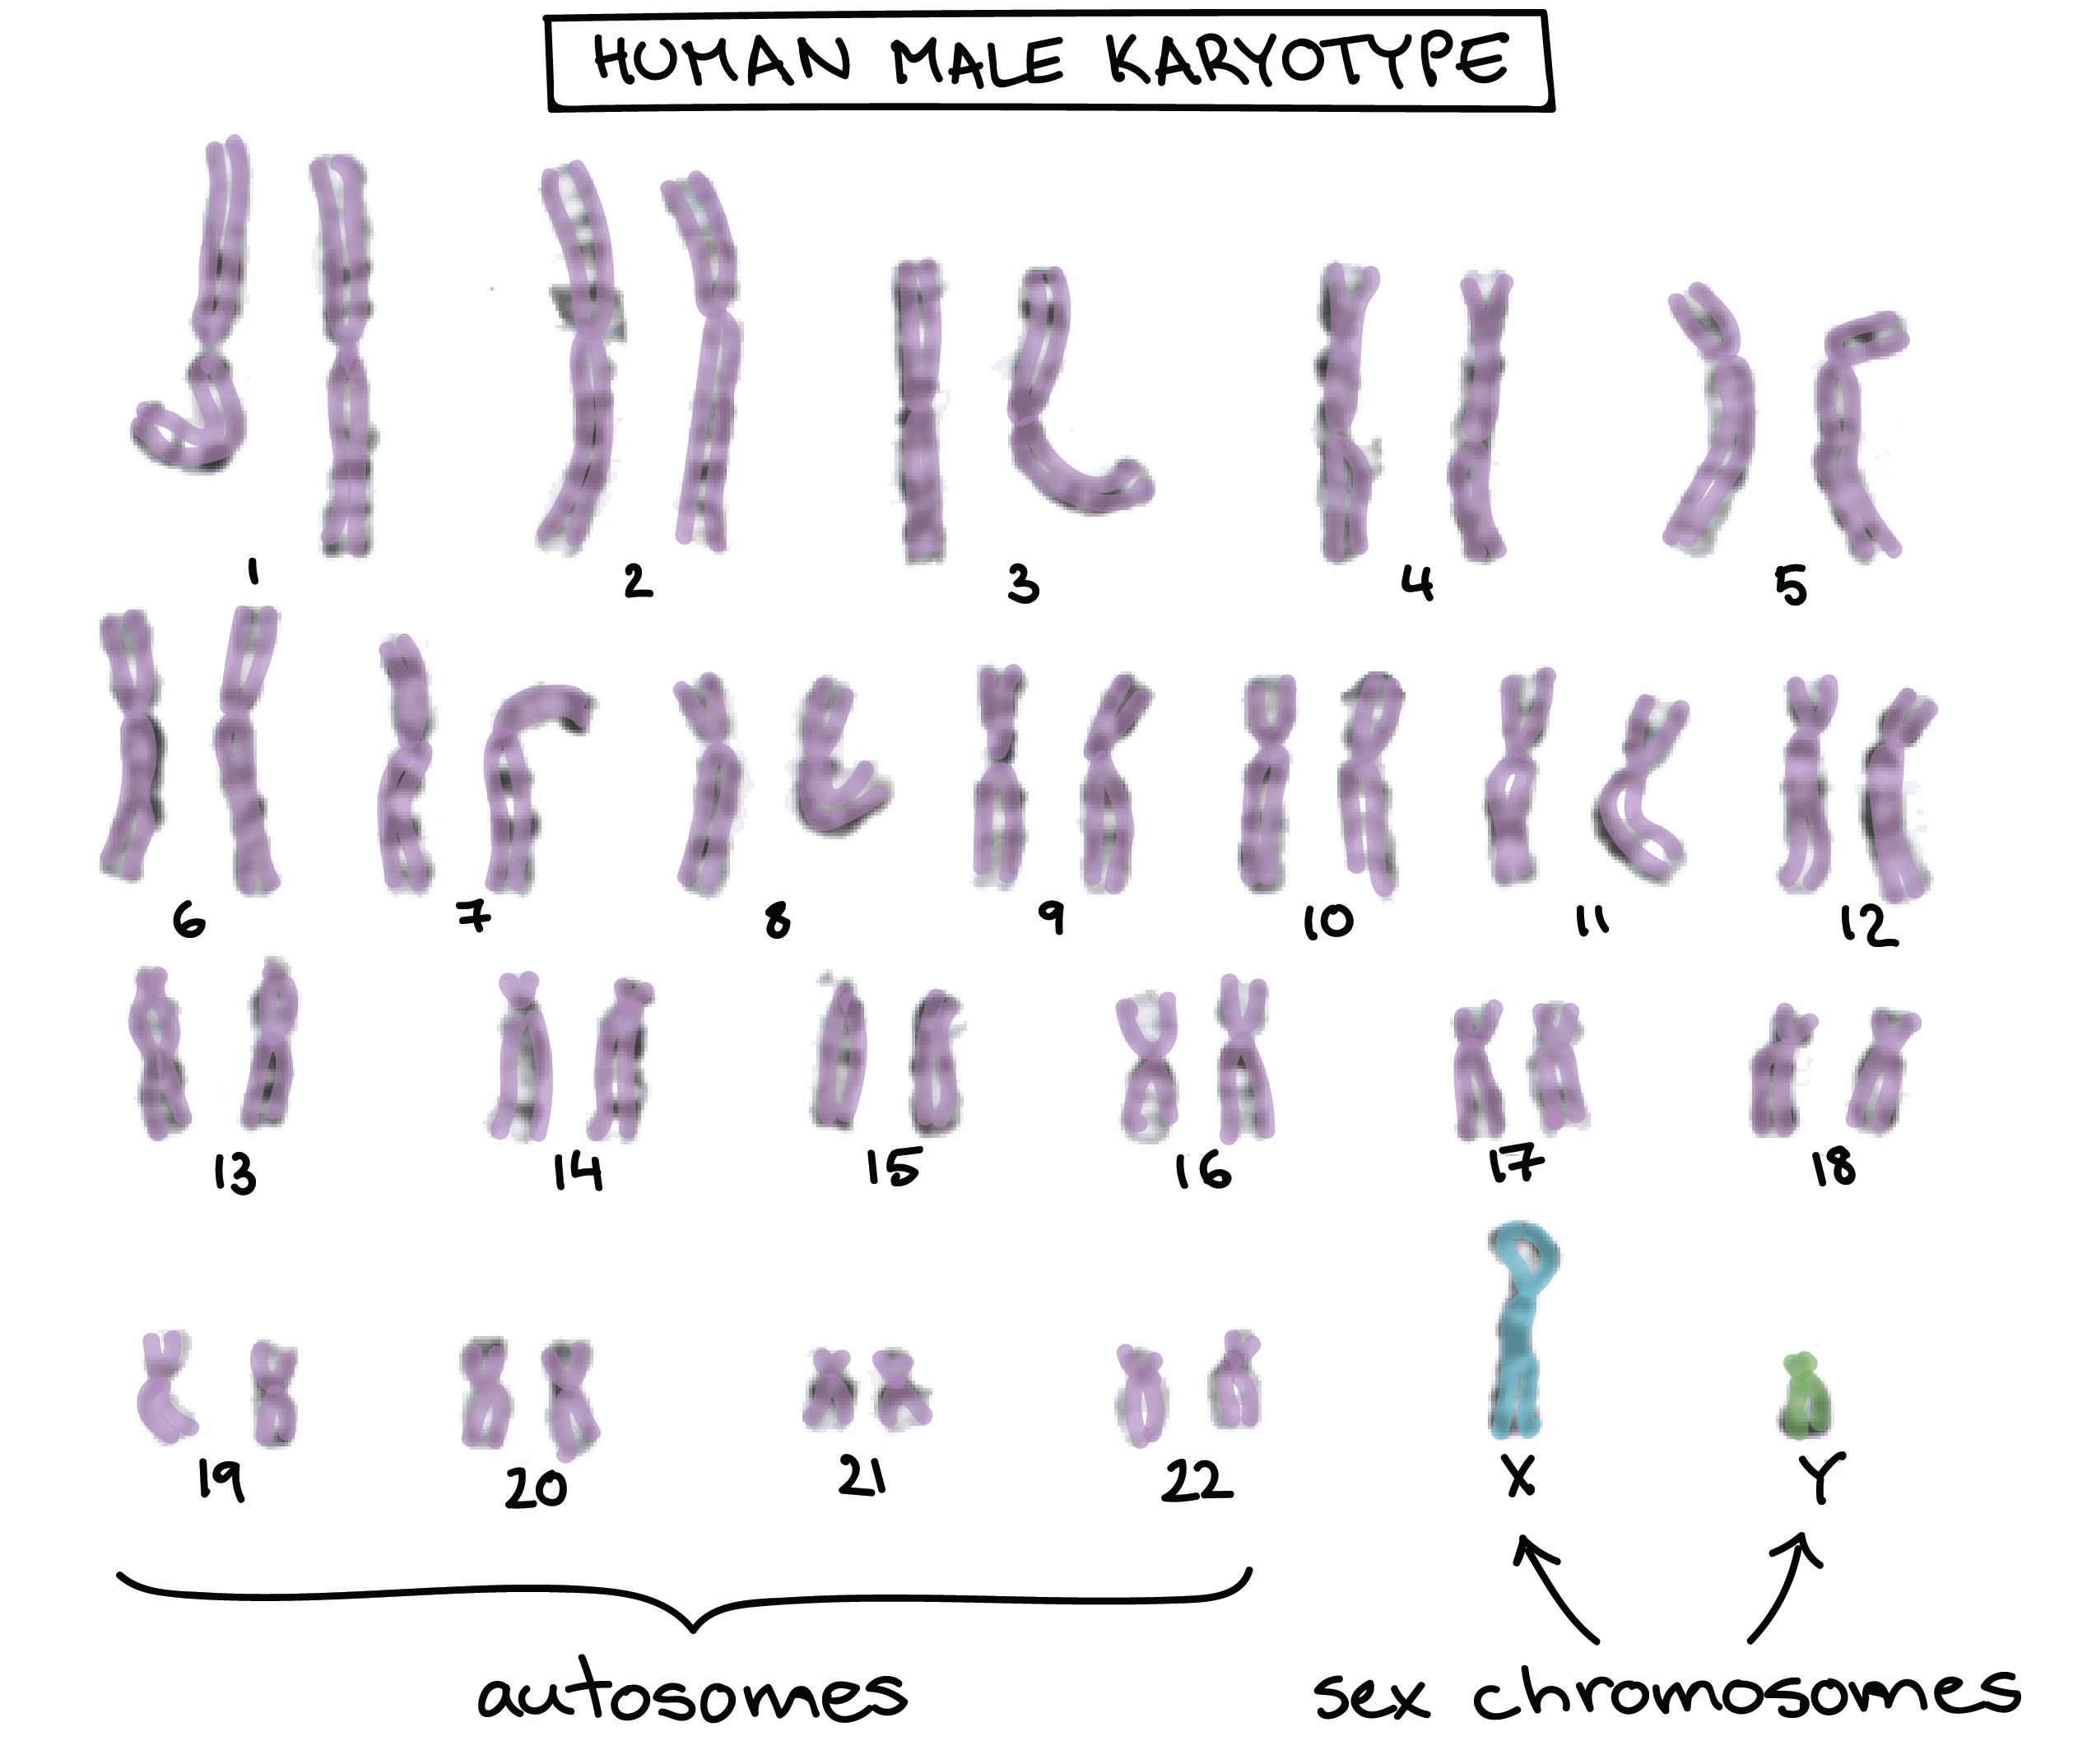 Imagen de un cariotipo humano, mostrando los 44 autosomas en pares coincidentes y 2 cromosomas sexuales disímiles (X e Y)